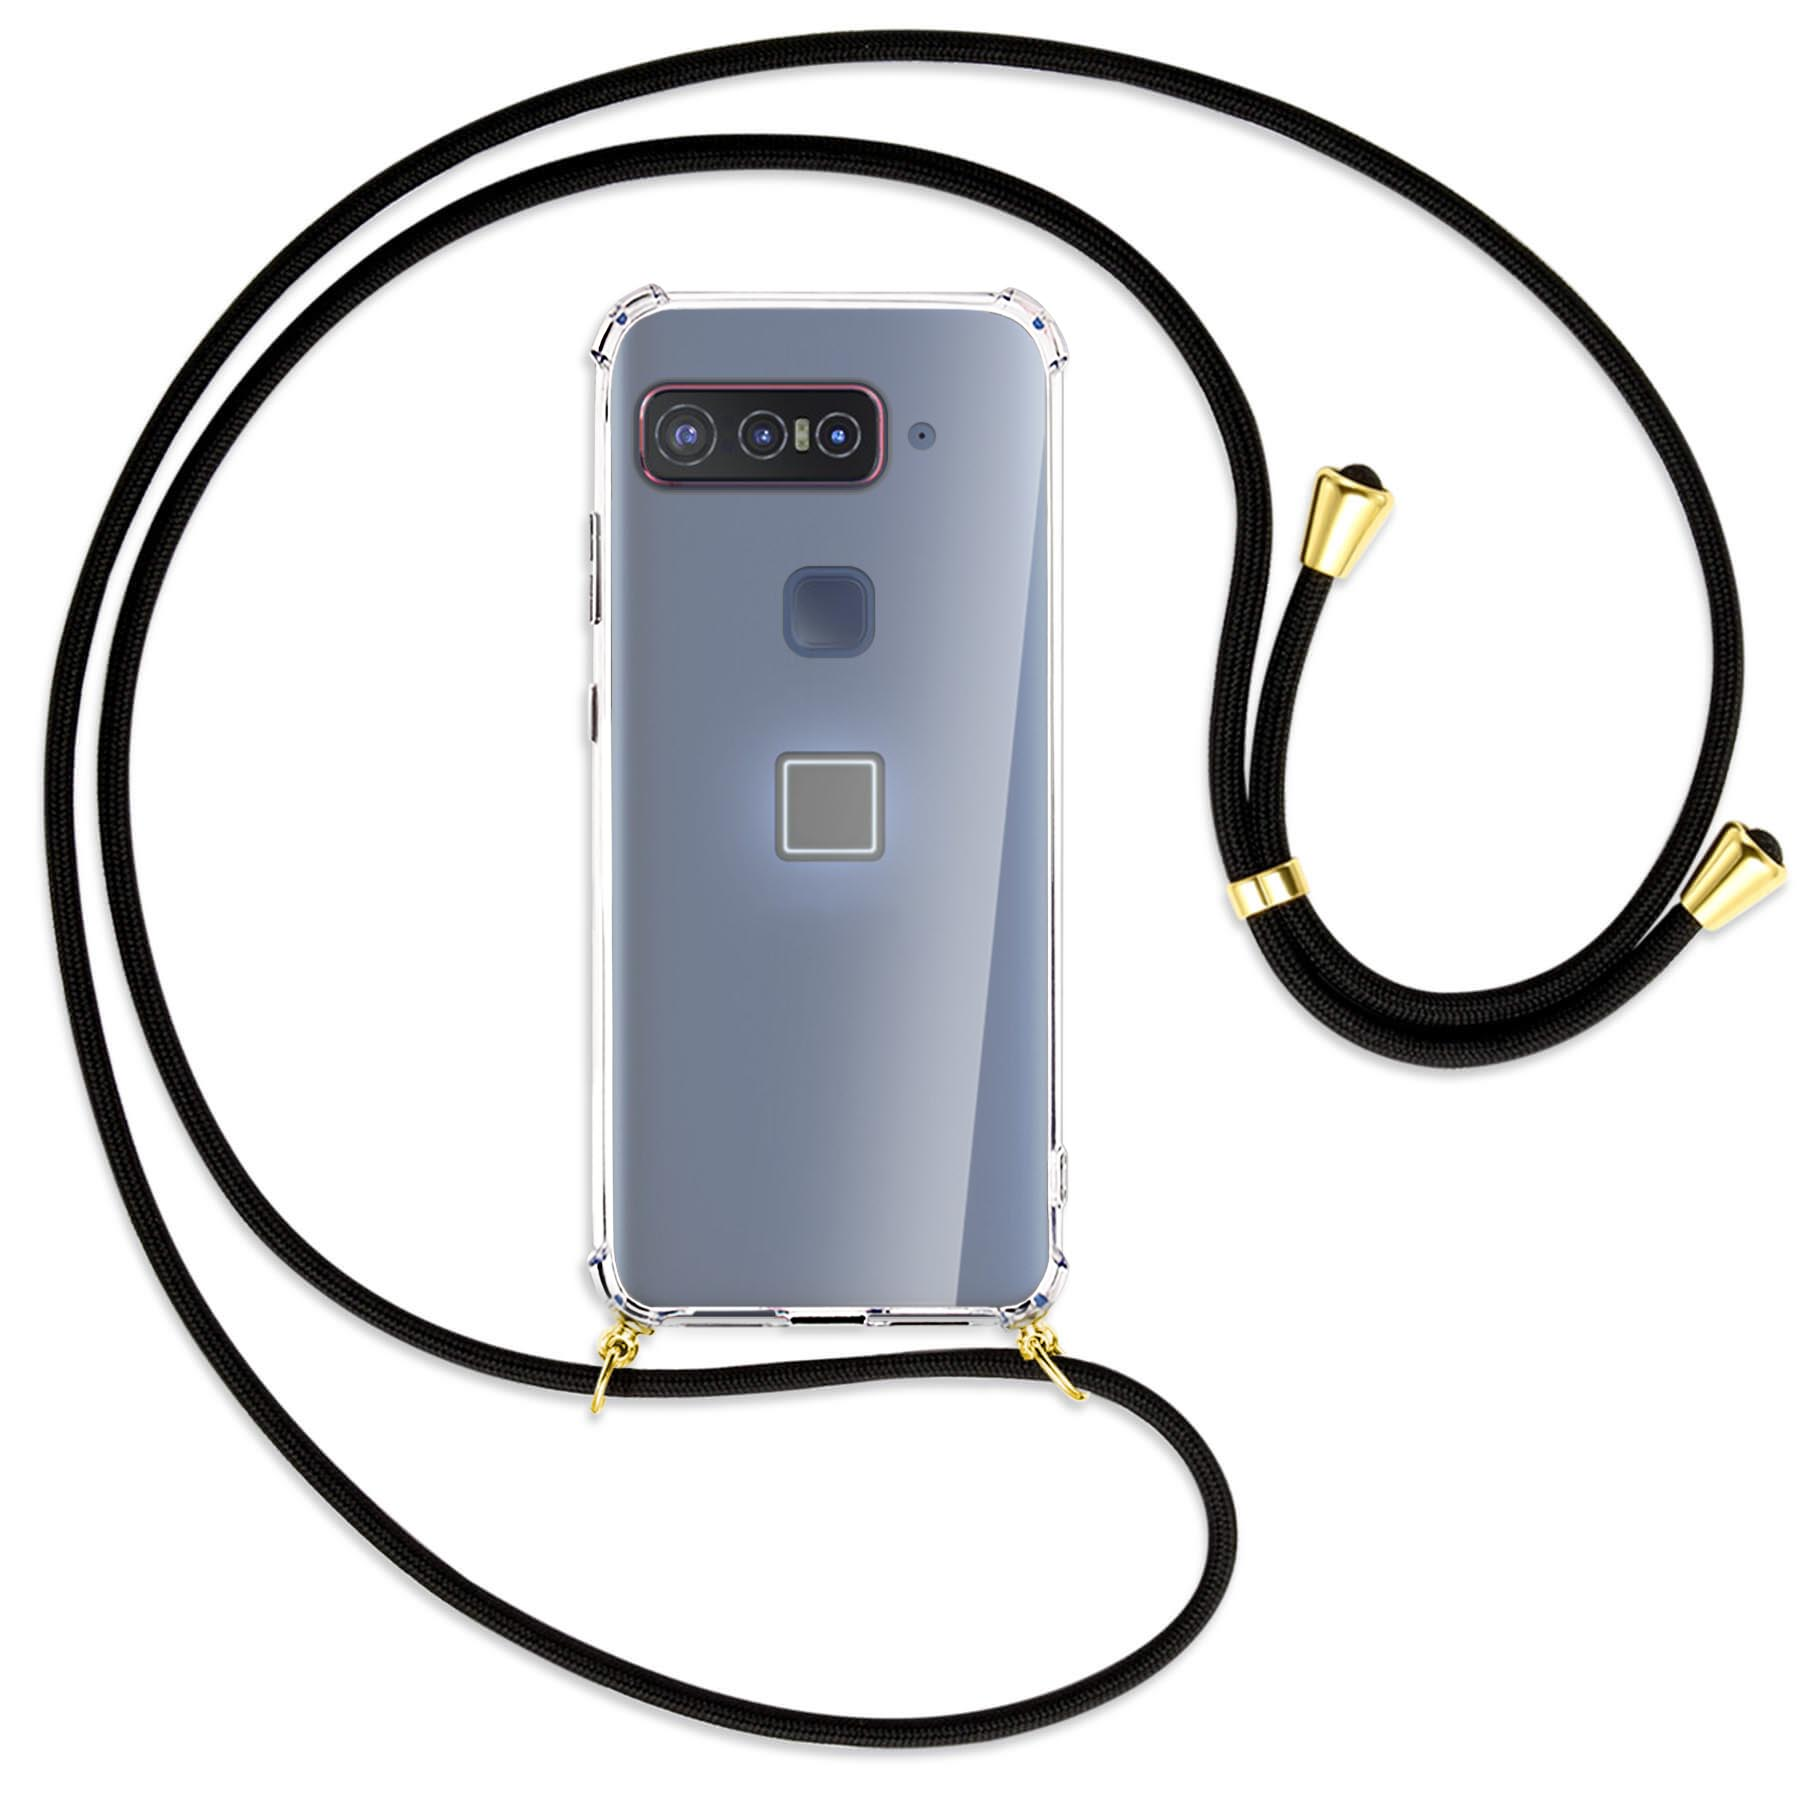 MTB MORE ENERGY Umhänge-Hülle mit Schwarz Smartphone Kordel, Snapdragon Insiders, Gold Backcover, / Qualcomm for Asus